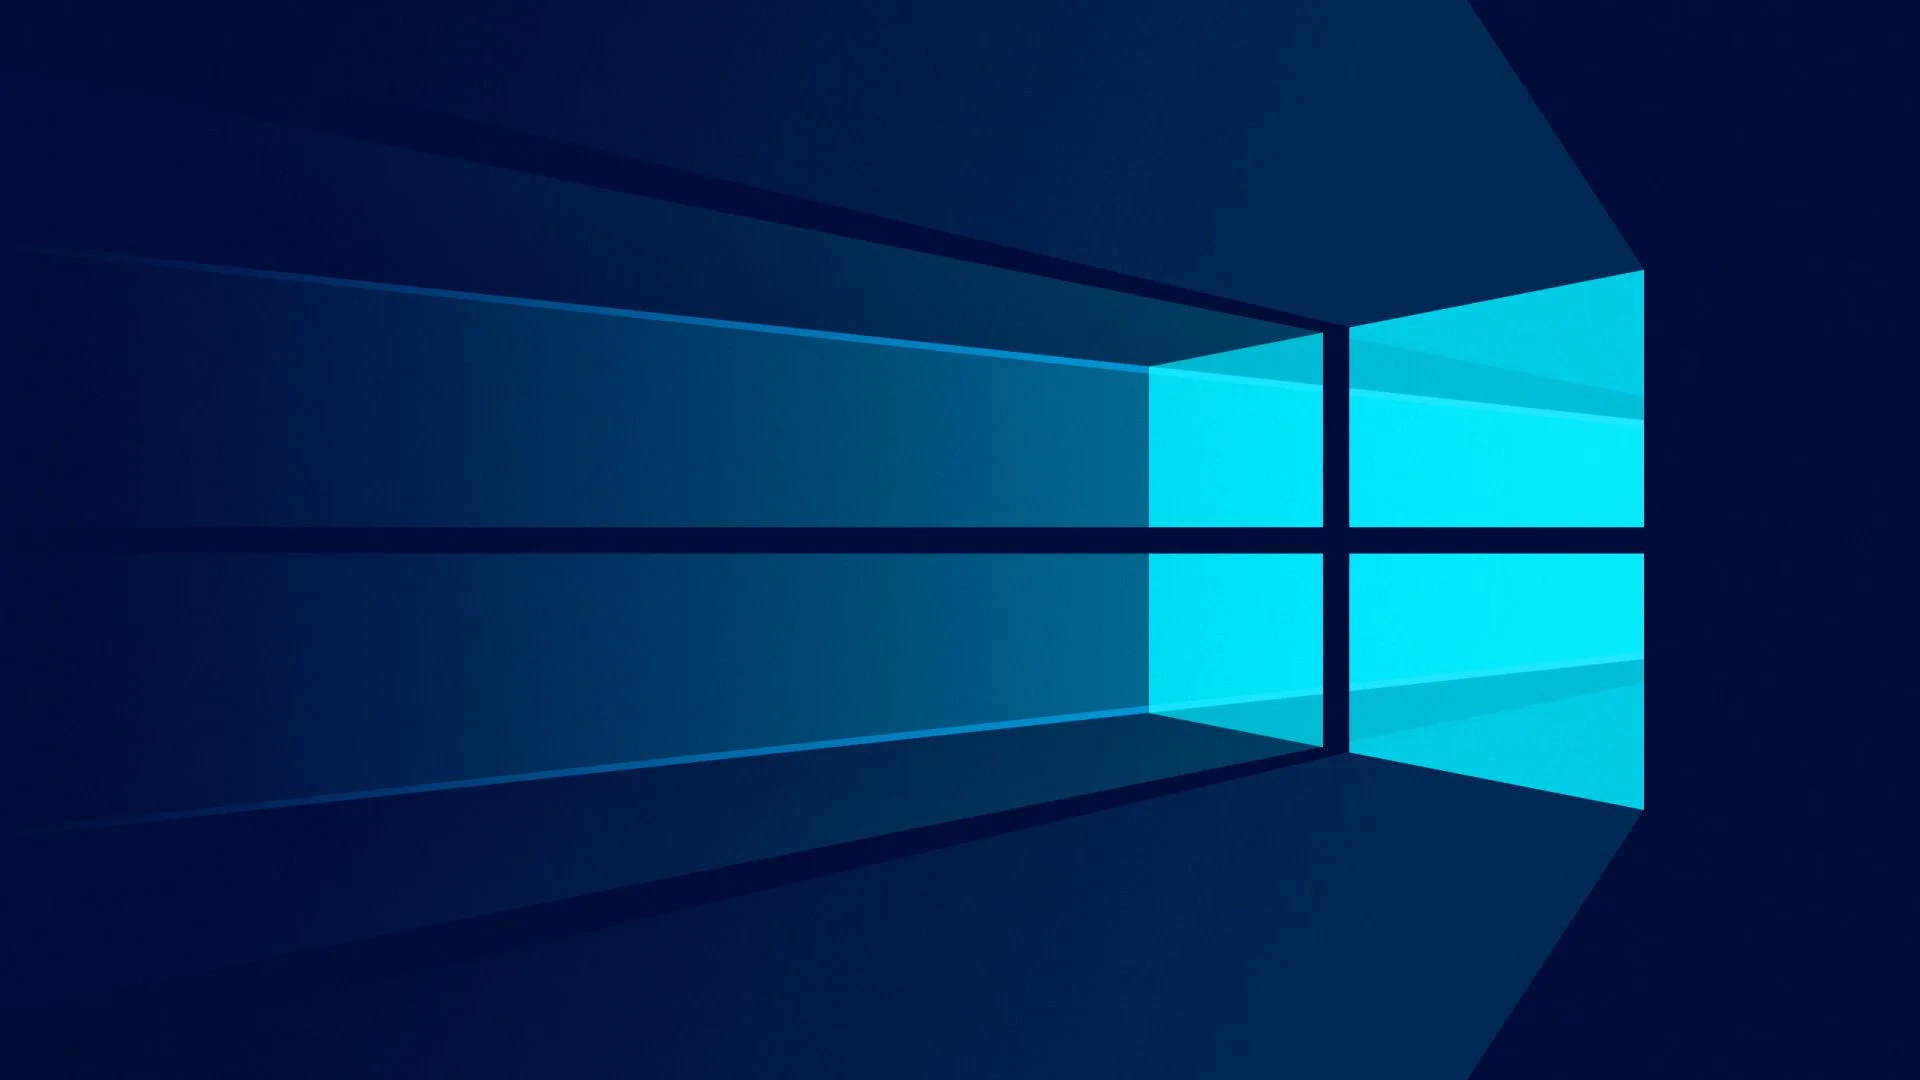 Microsoft: 10 принципов Windows 10 как свободной и справедливой платформы - фото 1